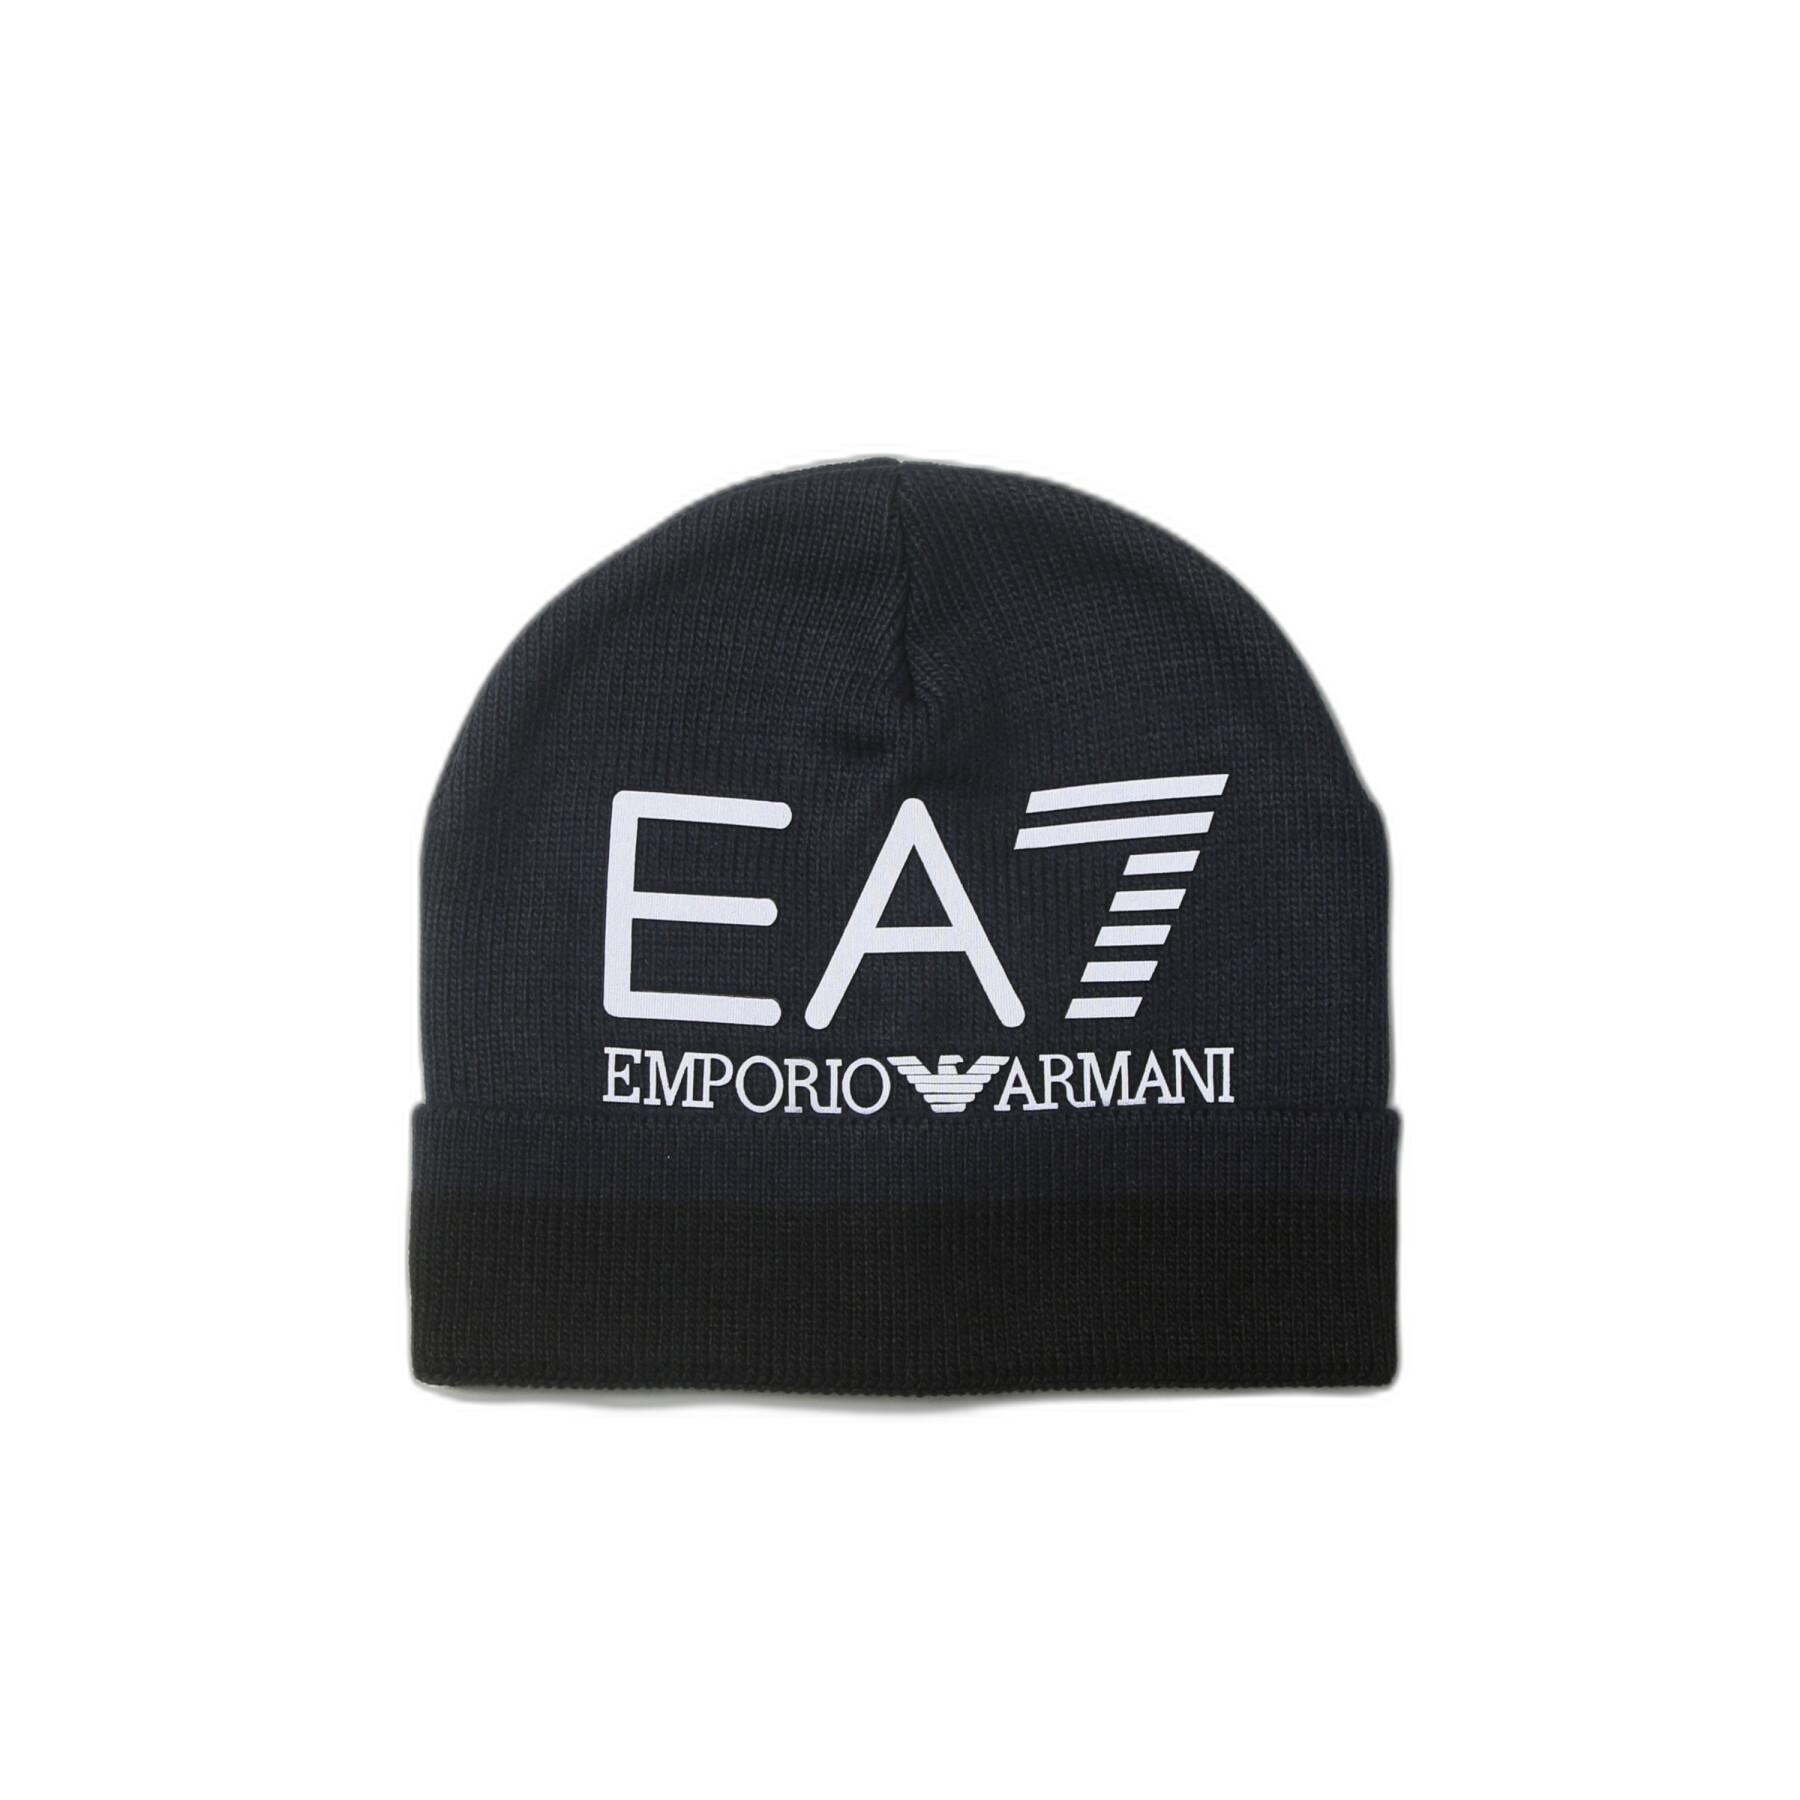 Czapka EA7 Emporio Armani